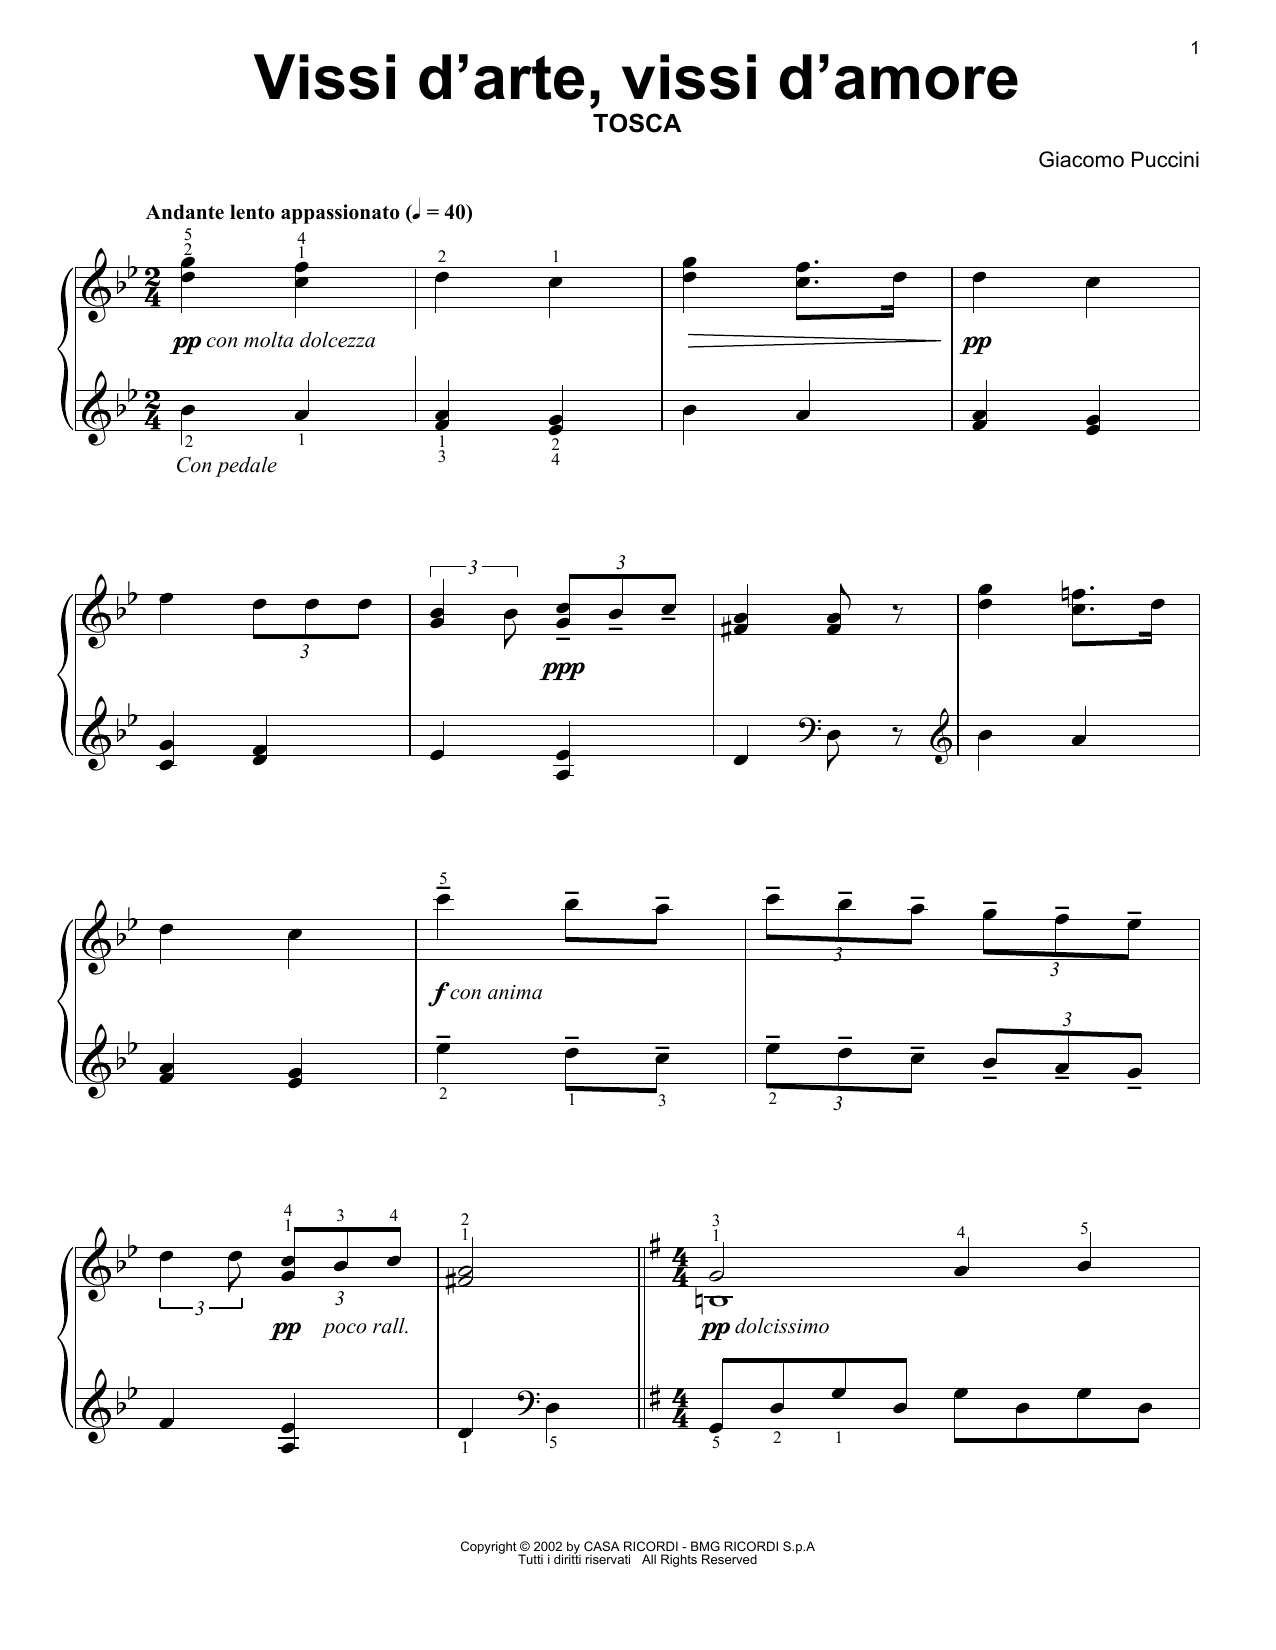 Giacomo Puccini Vissi D'Arte, Vissi D'Amore sheet music notes printable PDF score